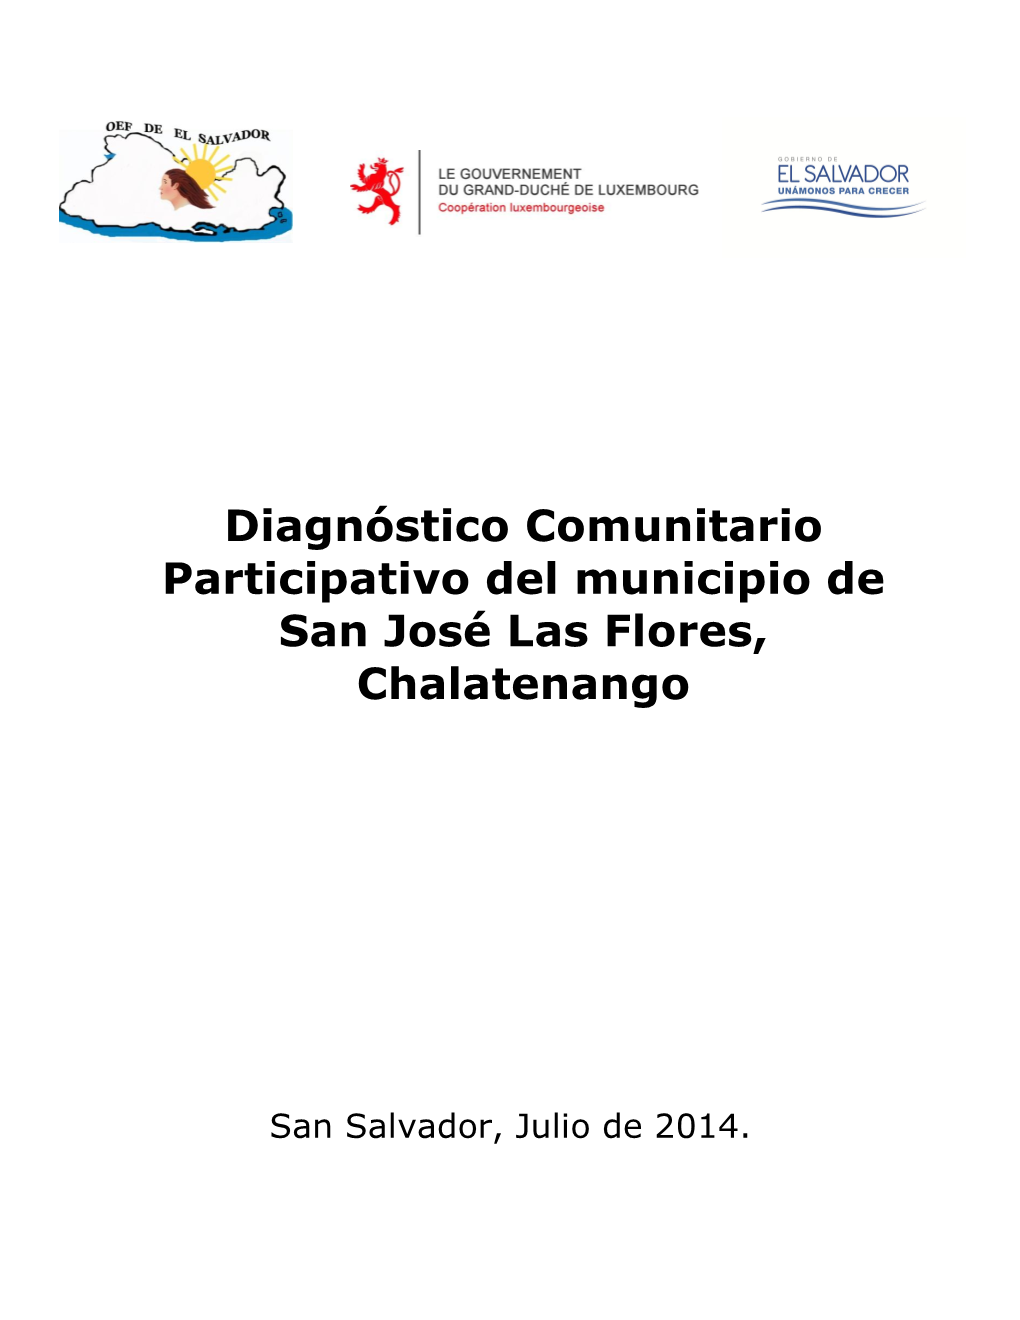 Diagnóstico Comunitario Participativo Del Municipio De San José Las Flores, Chalatenango